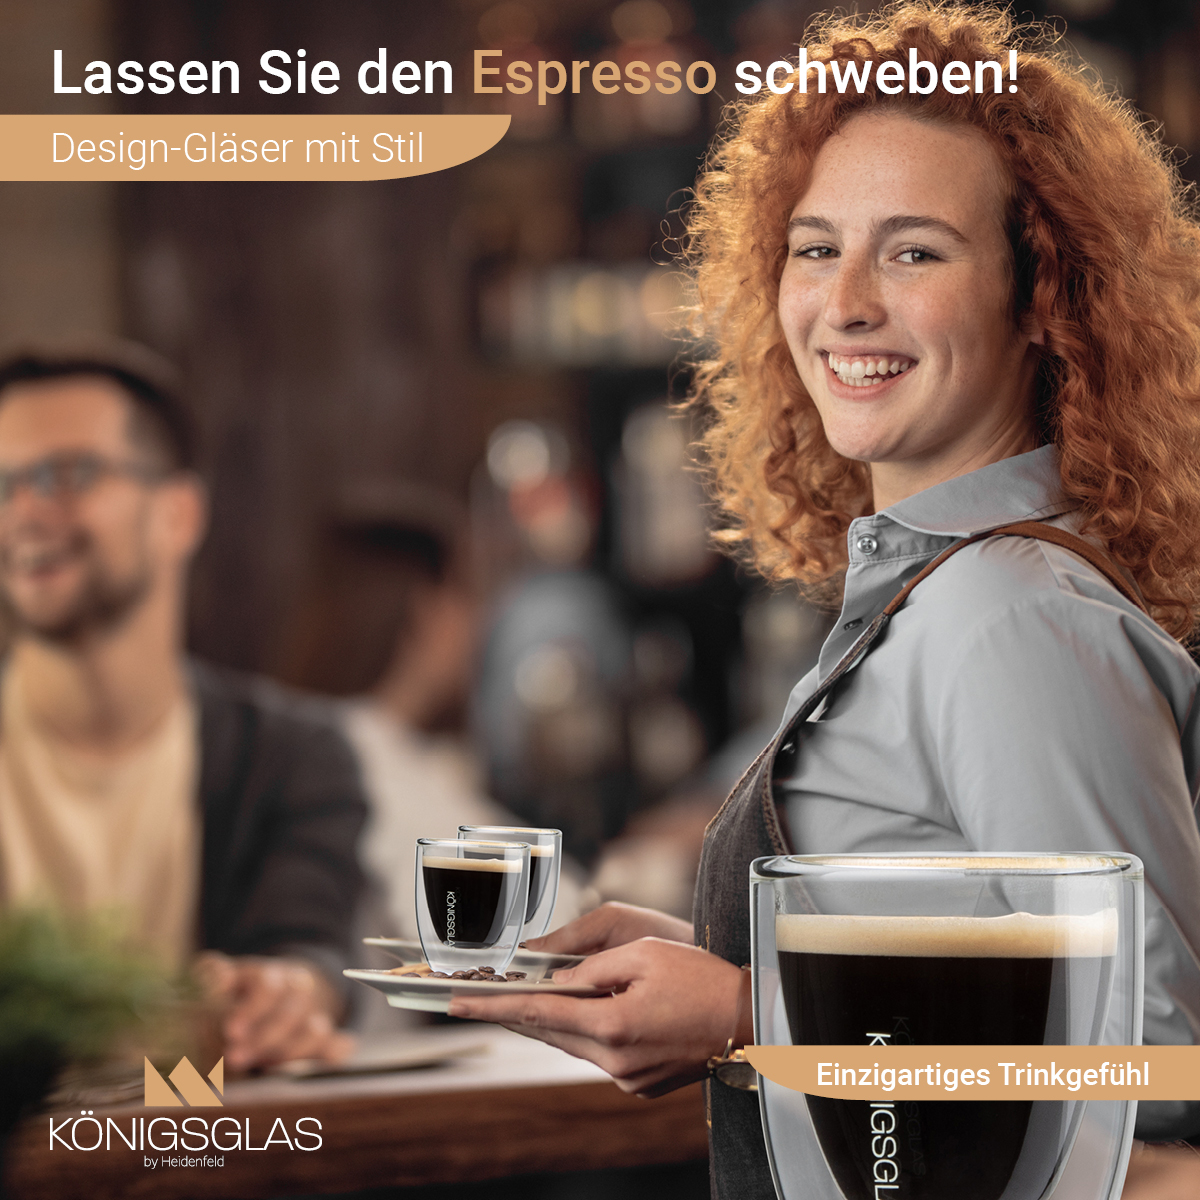 HEIDENFELD 80 Espresso ml Königsglas Kaffeegläser 2x